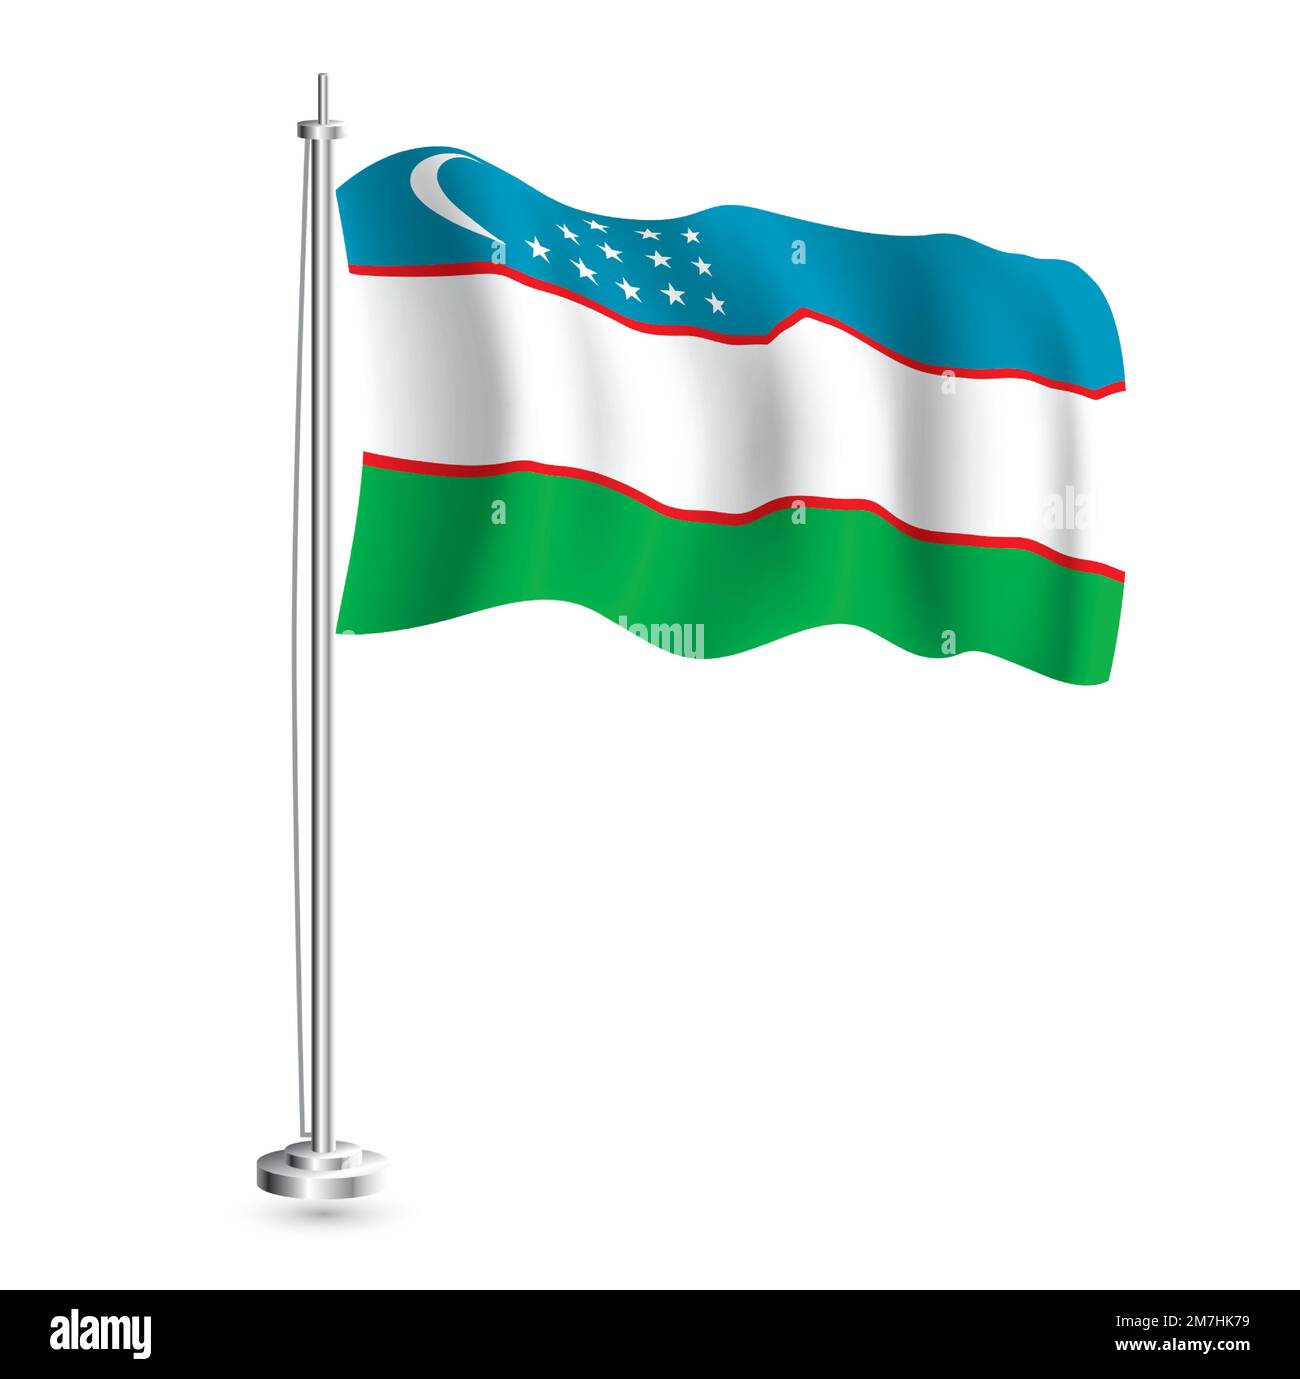 Usbekische Flagge. Isolierte realistische Wellenflagge des Usbekistan-Landes auf Flaggenmast. Vektordarstellung. Stock Vektor